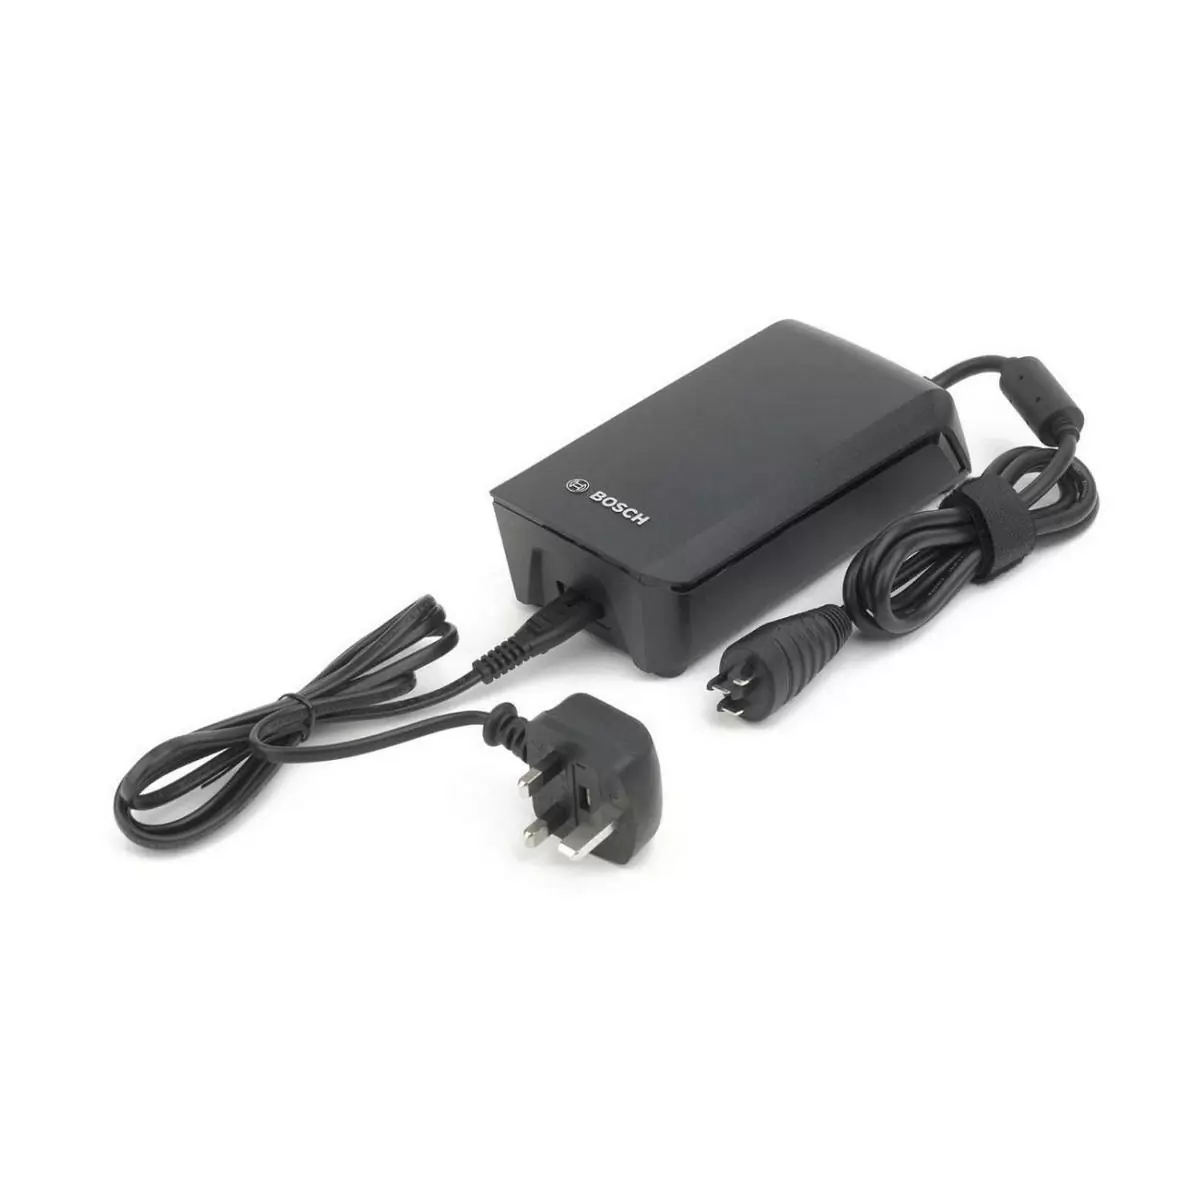 Chargeur de batterie 6a câble d'alimentation fastcharger uk 2019 - image